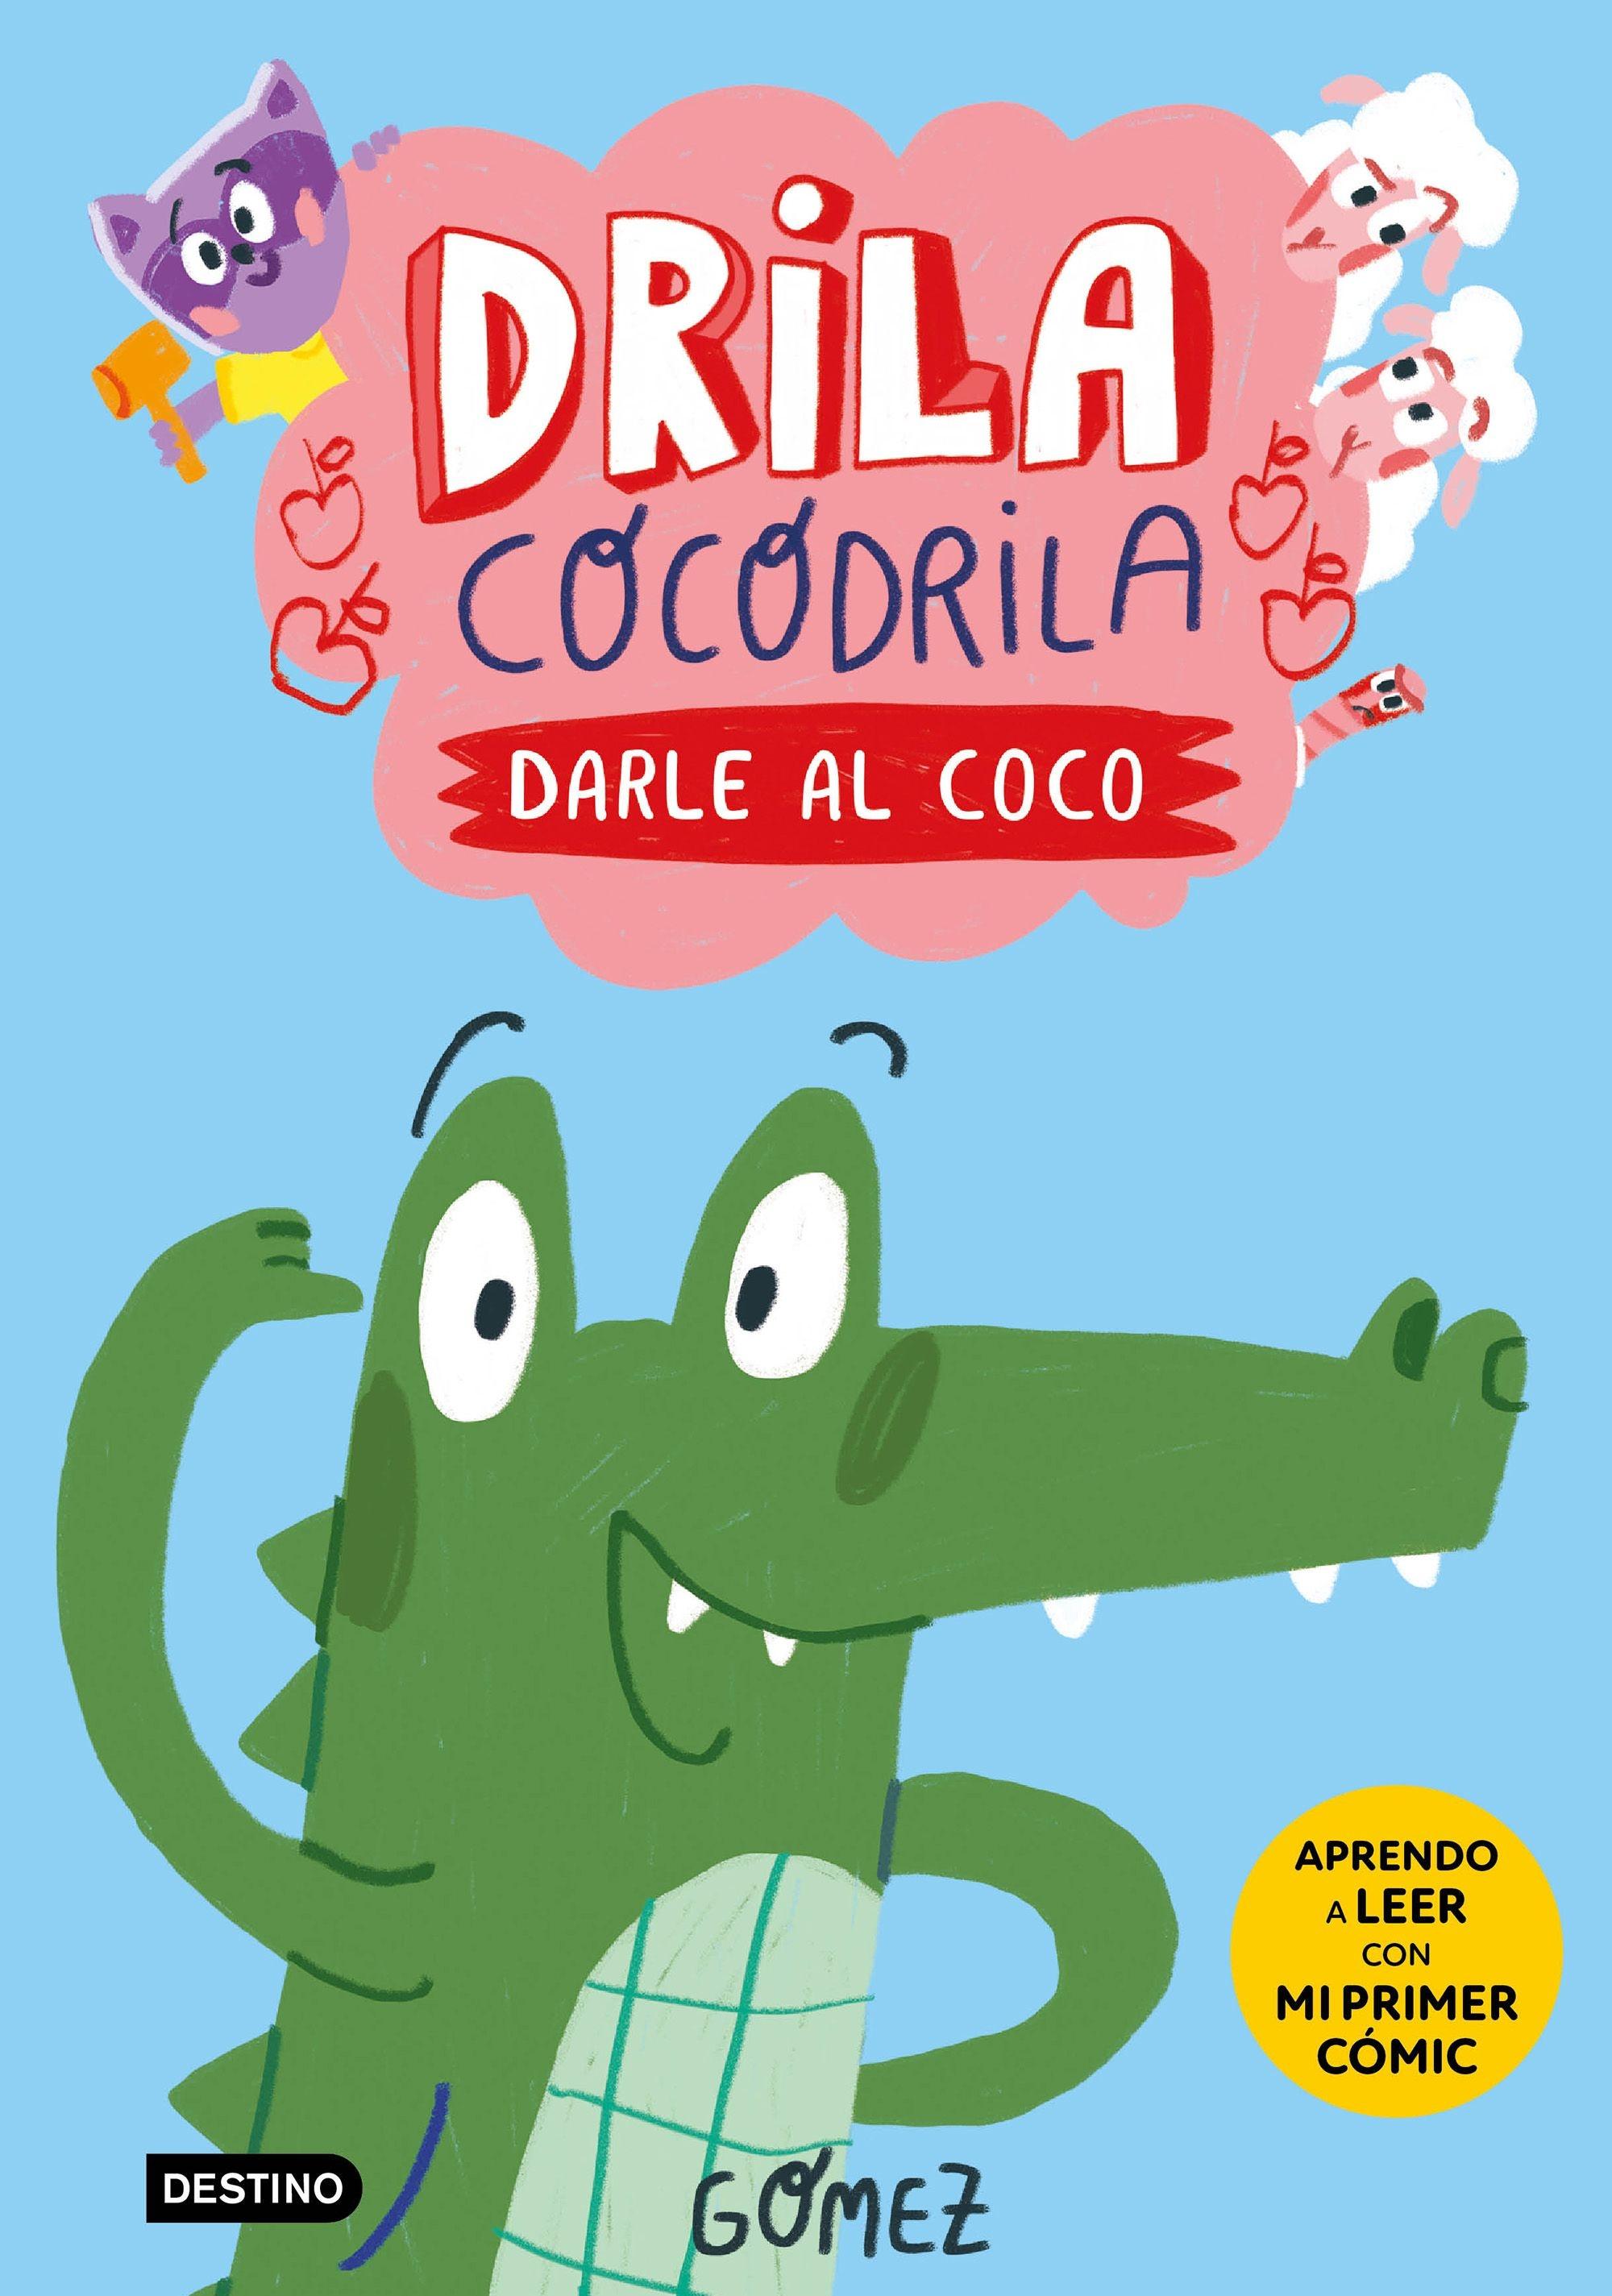 Drila Cocodrila 1 "Darle al Coco". 